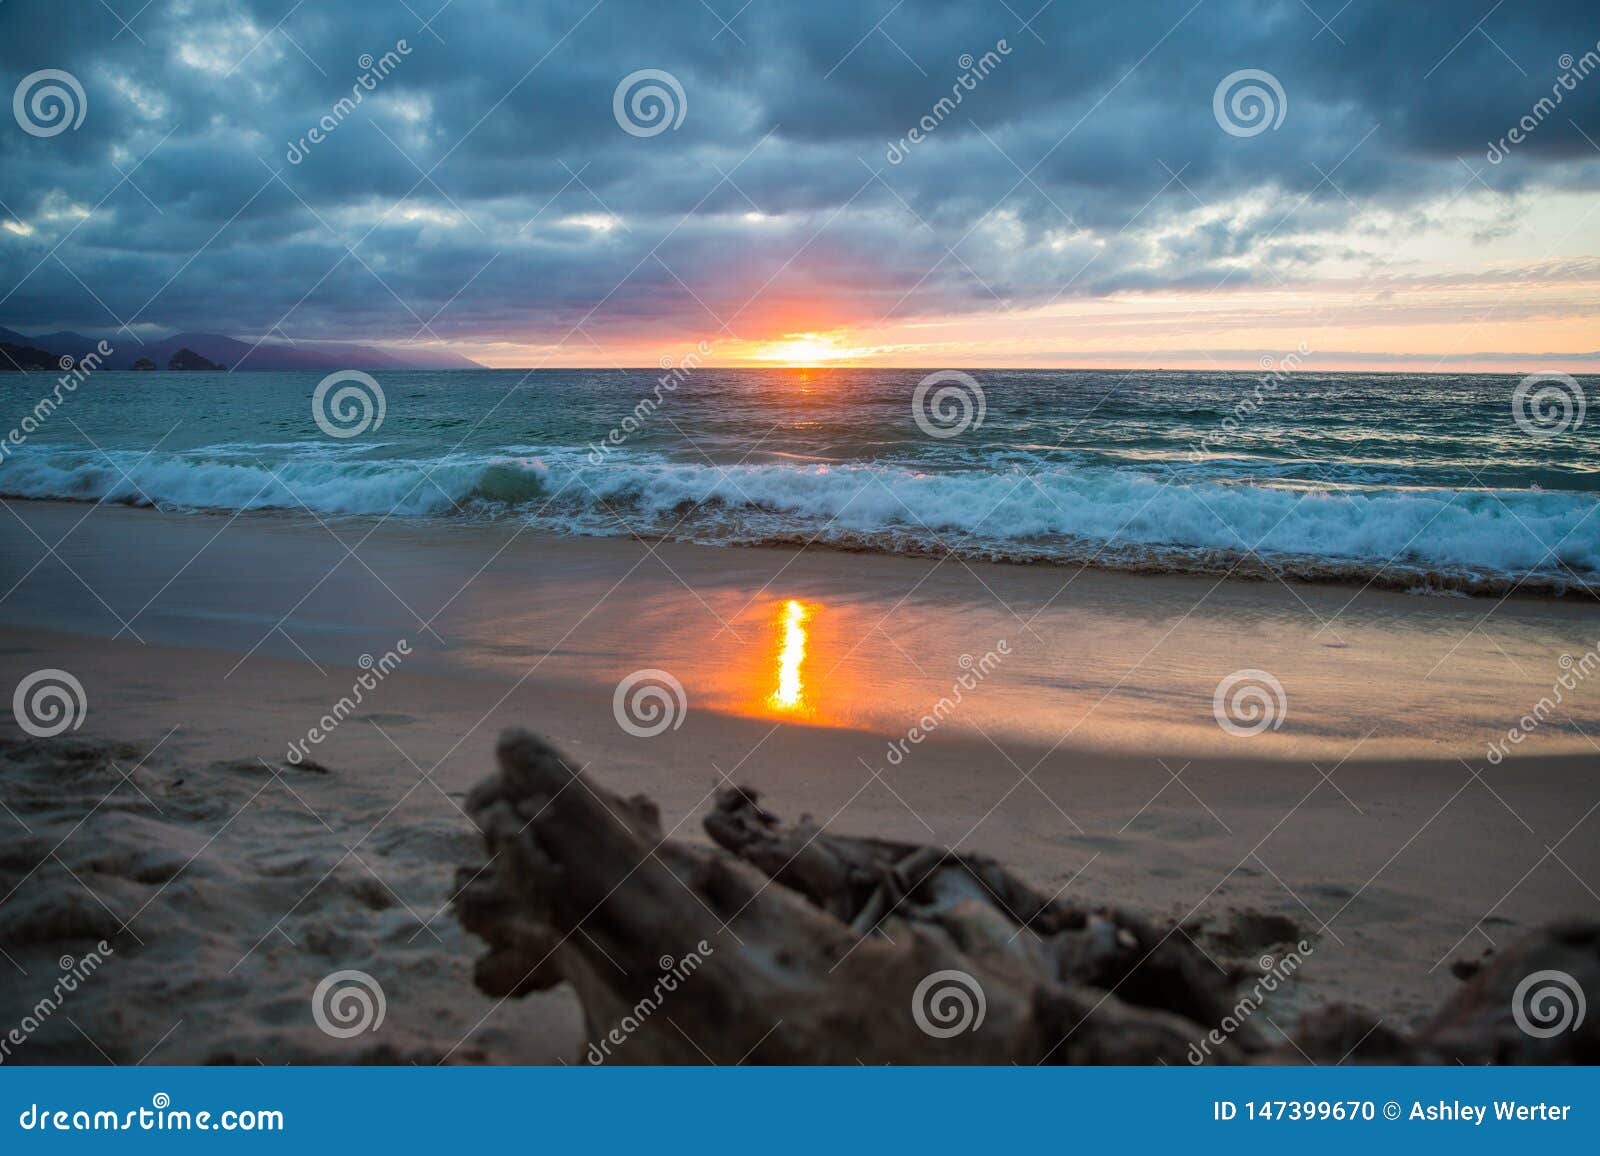 sunset at punta negra beach